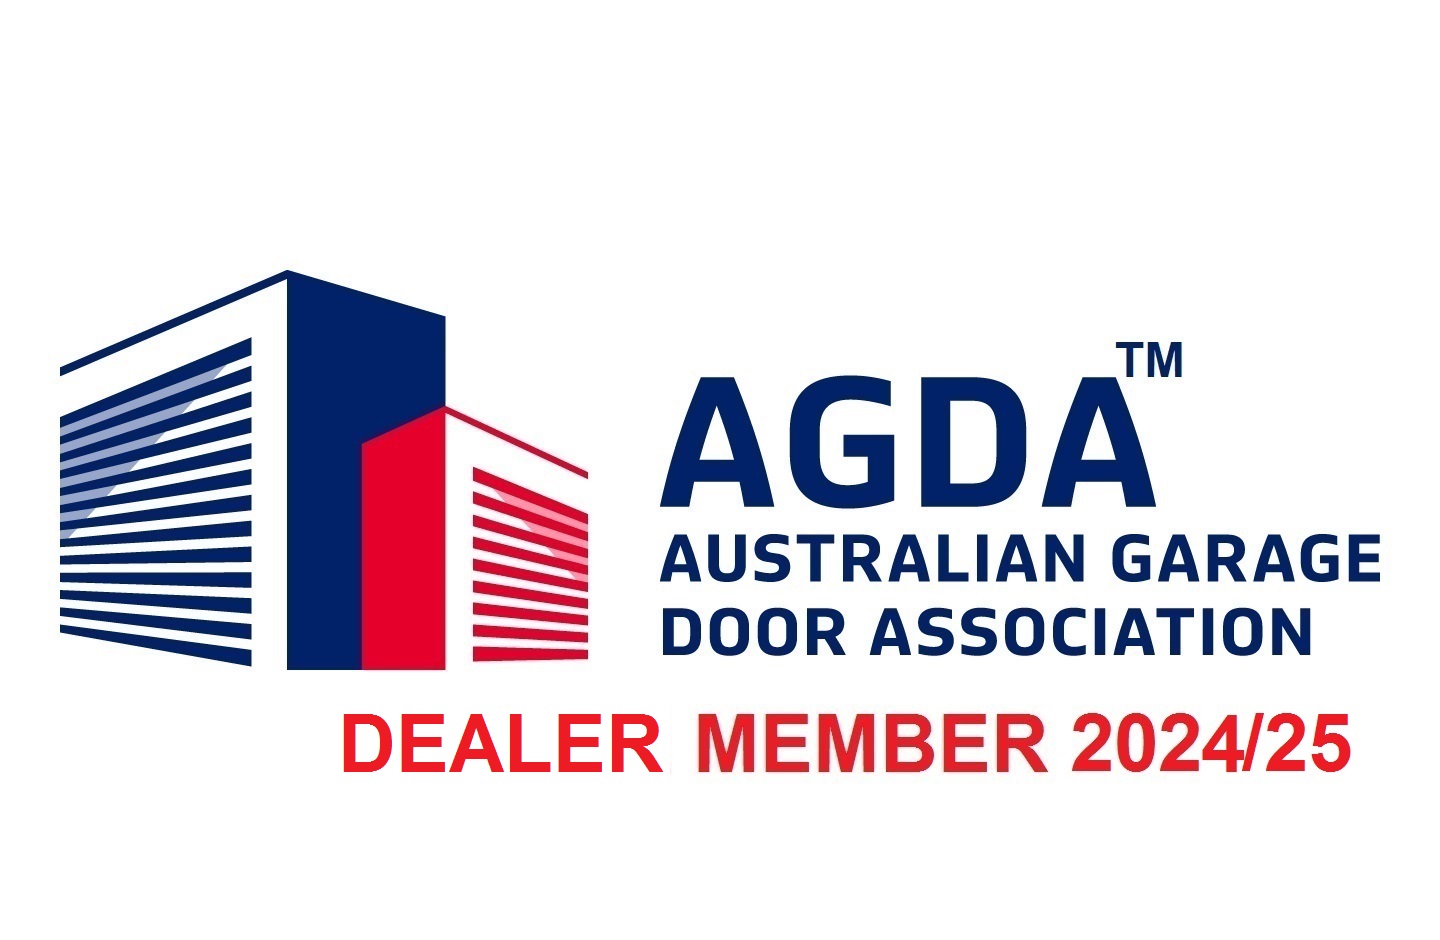 ADGA Dealer Member 2024/25